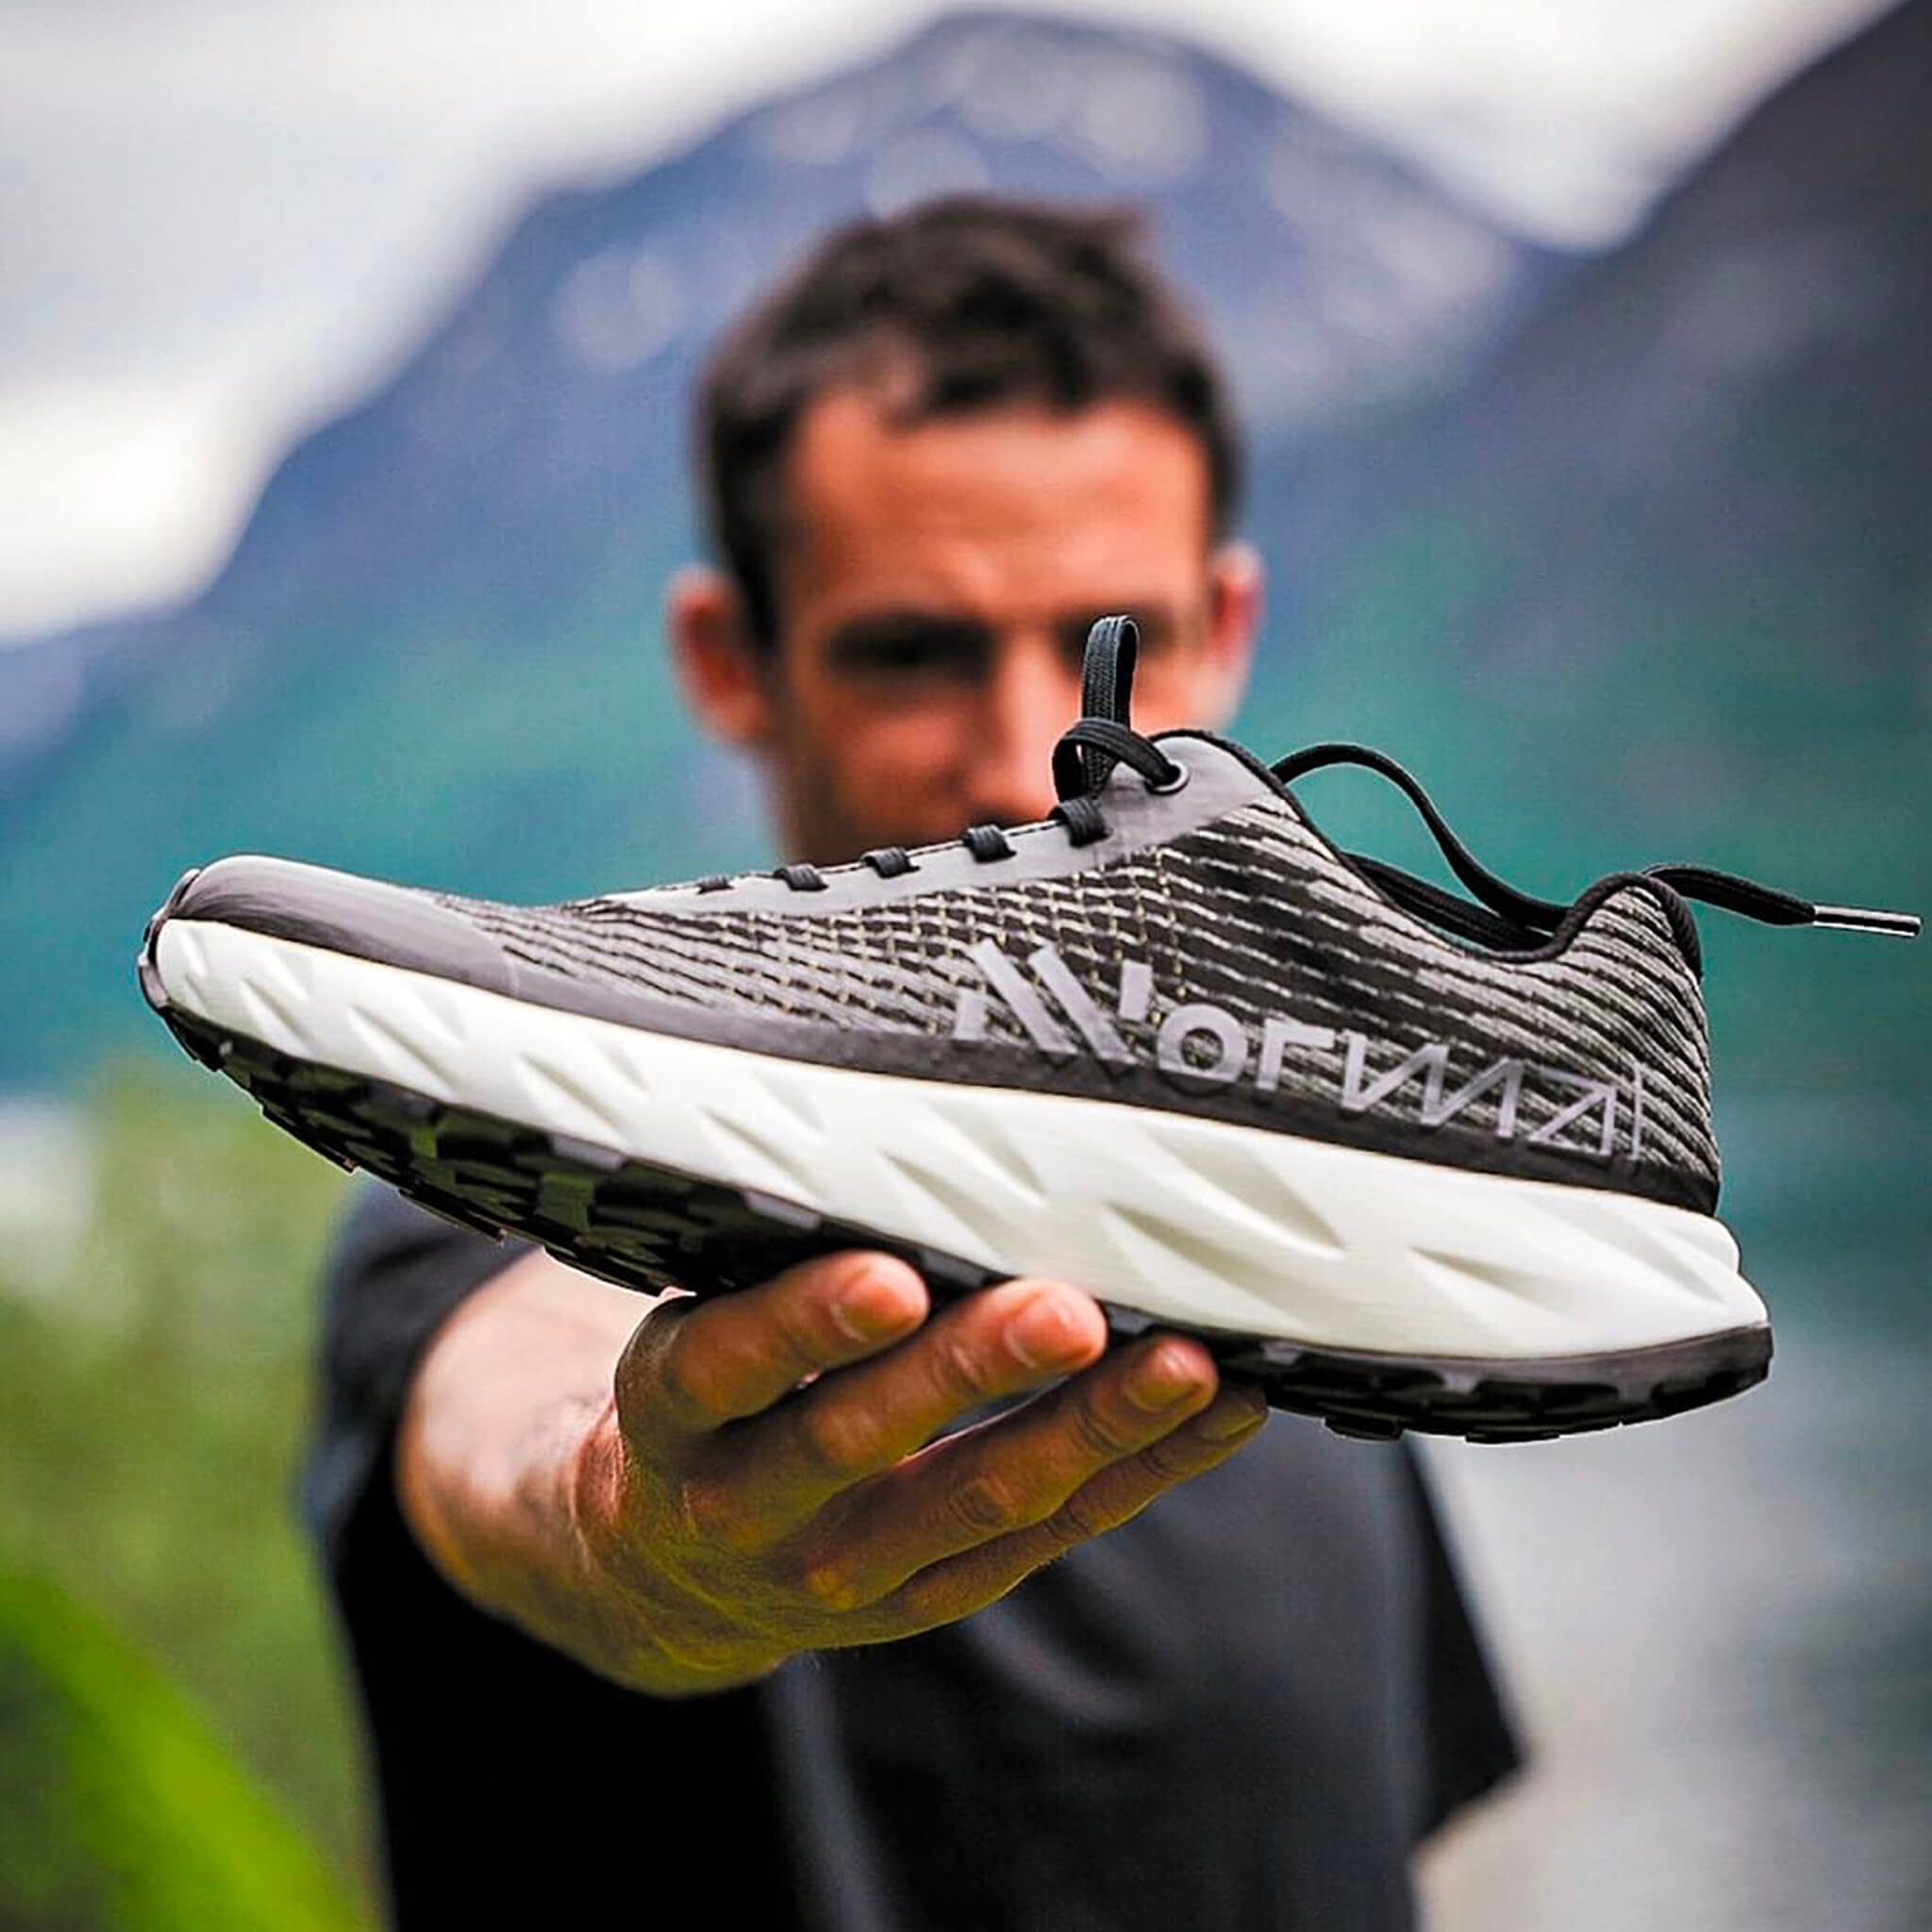 Kilian Jornet holding the NNormal Kjerag trail running shoe